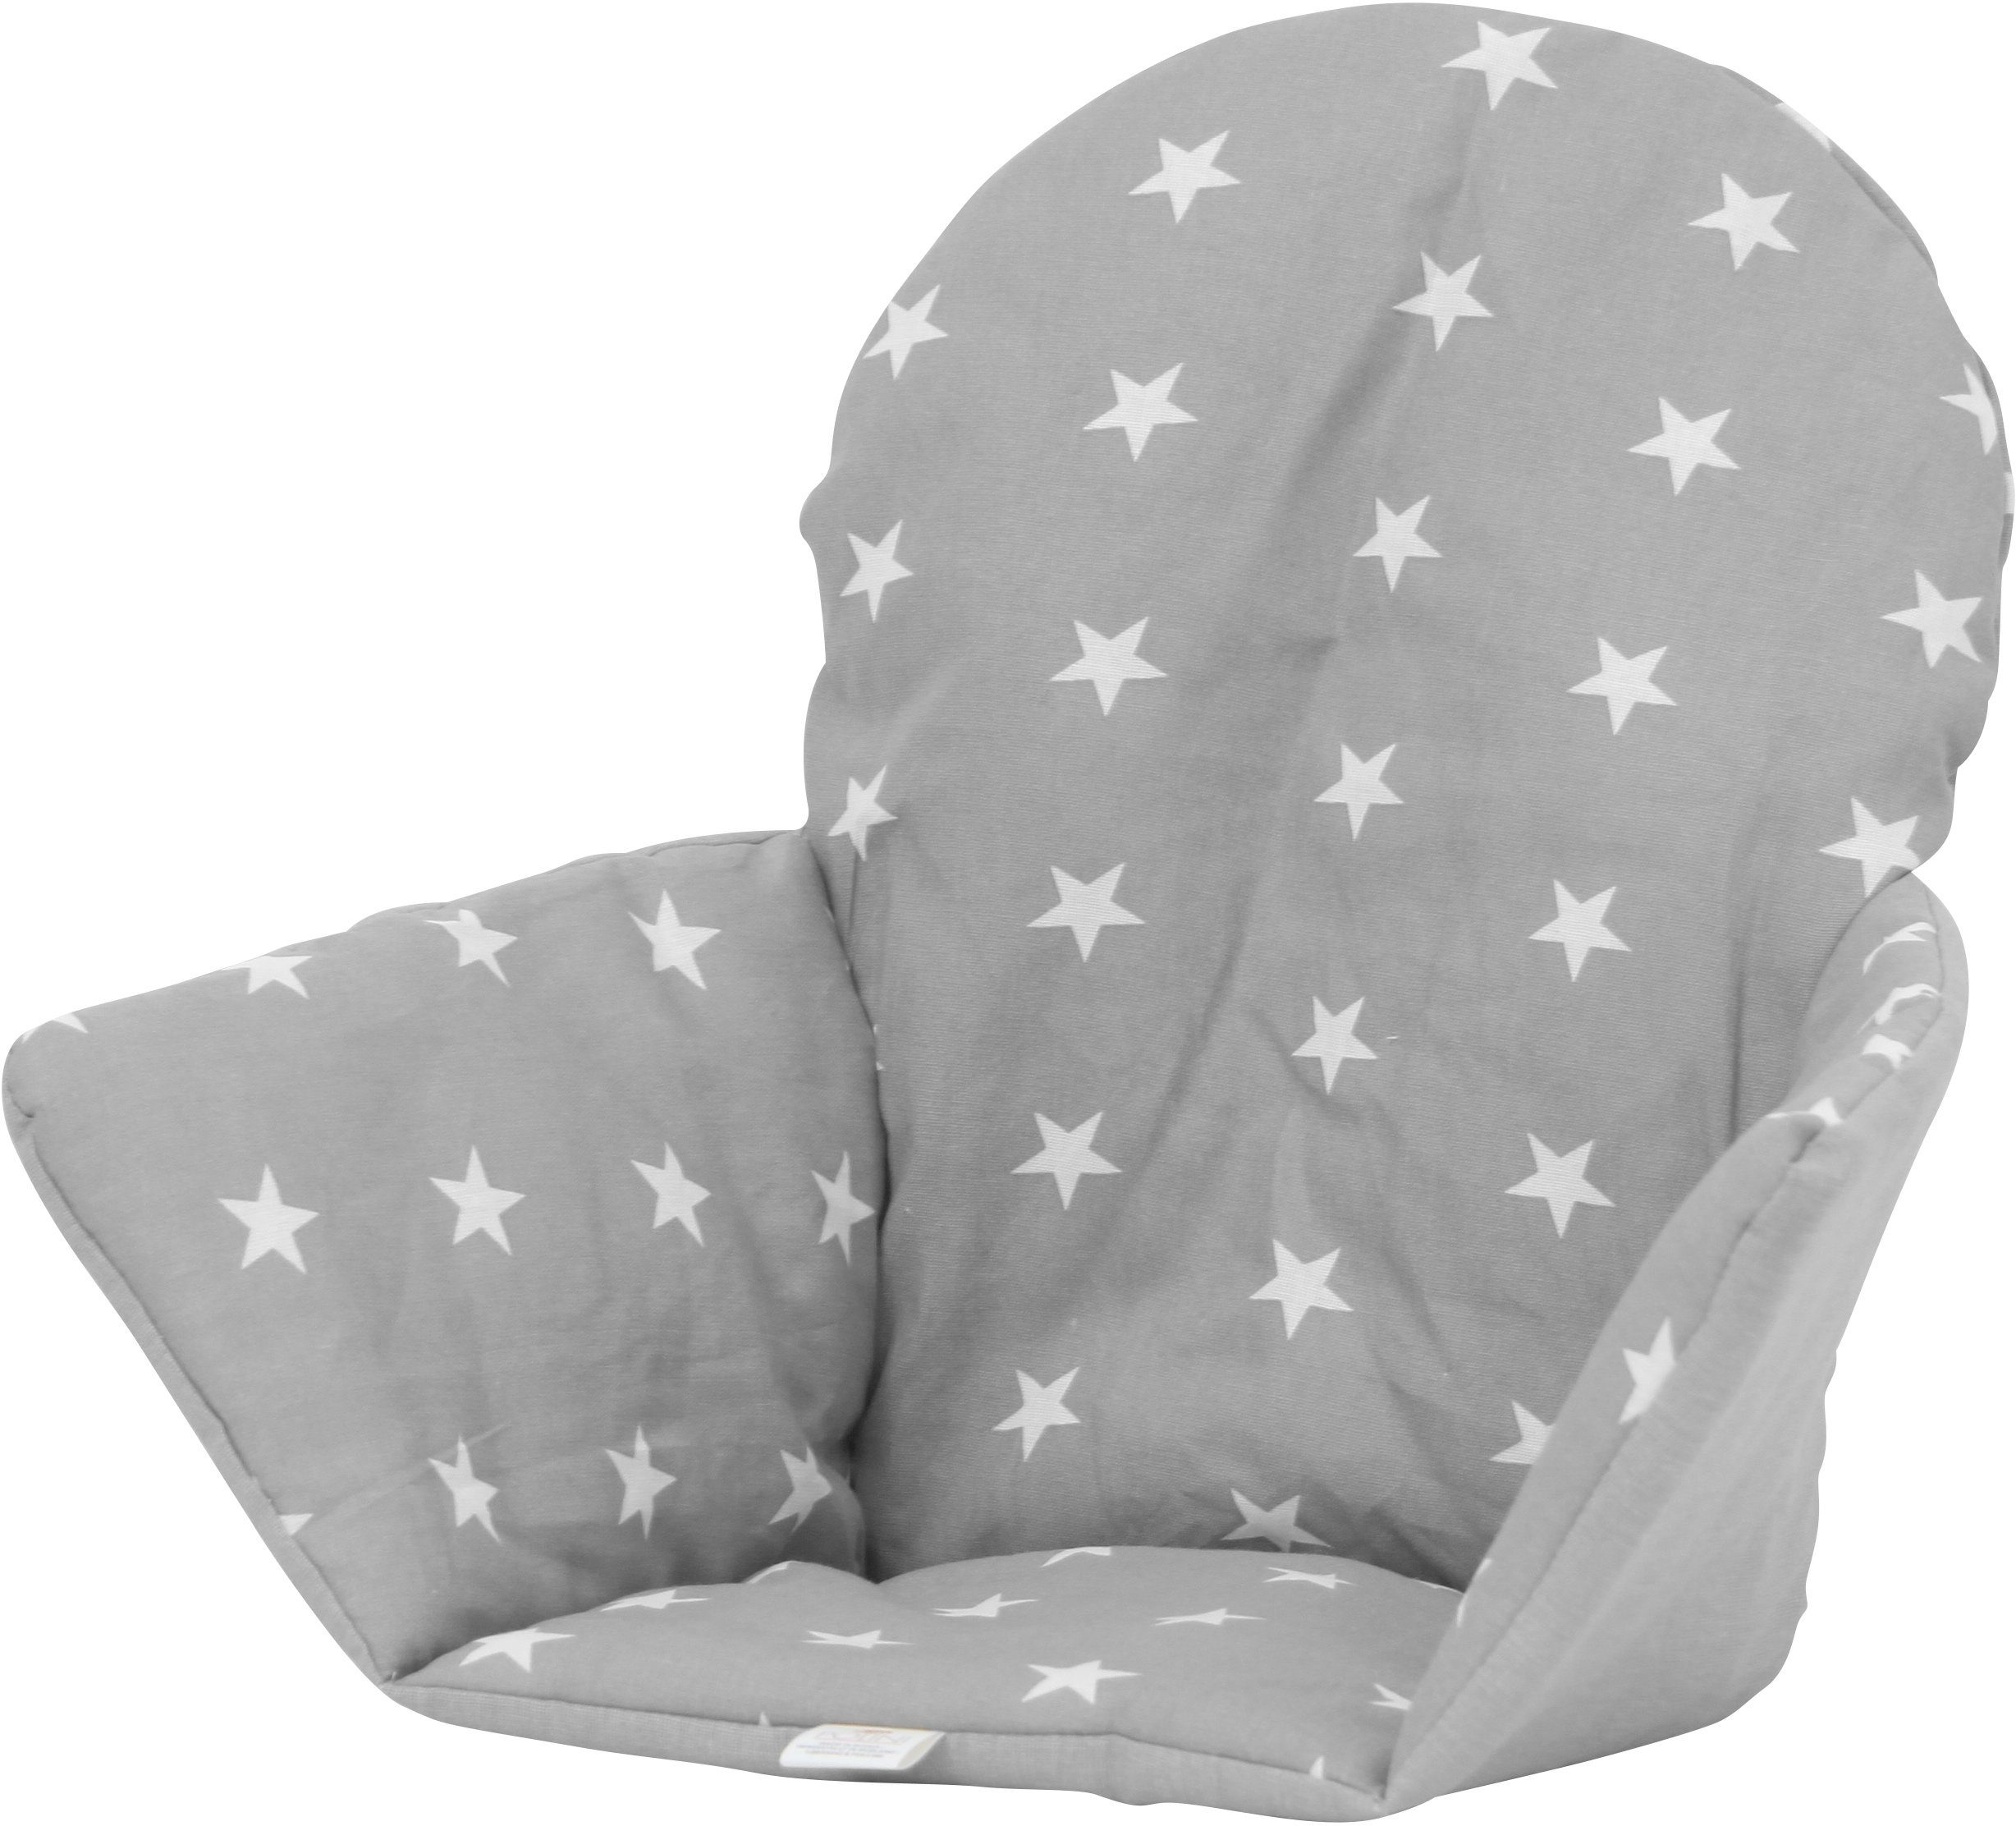 Polini kids Kinder-Sitzauflage »Sterne grau«, für Ikea Antilop-Hochstuhl  (nicht im Lieferumfang enthalten)